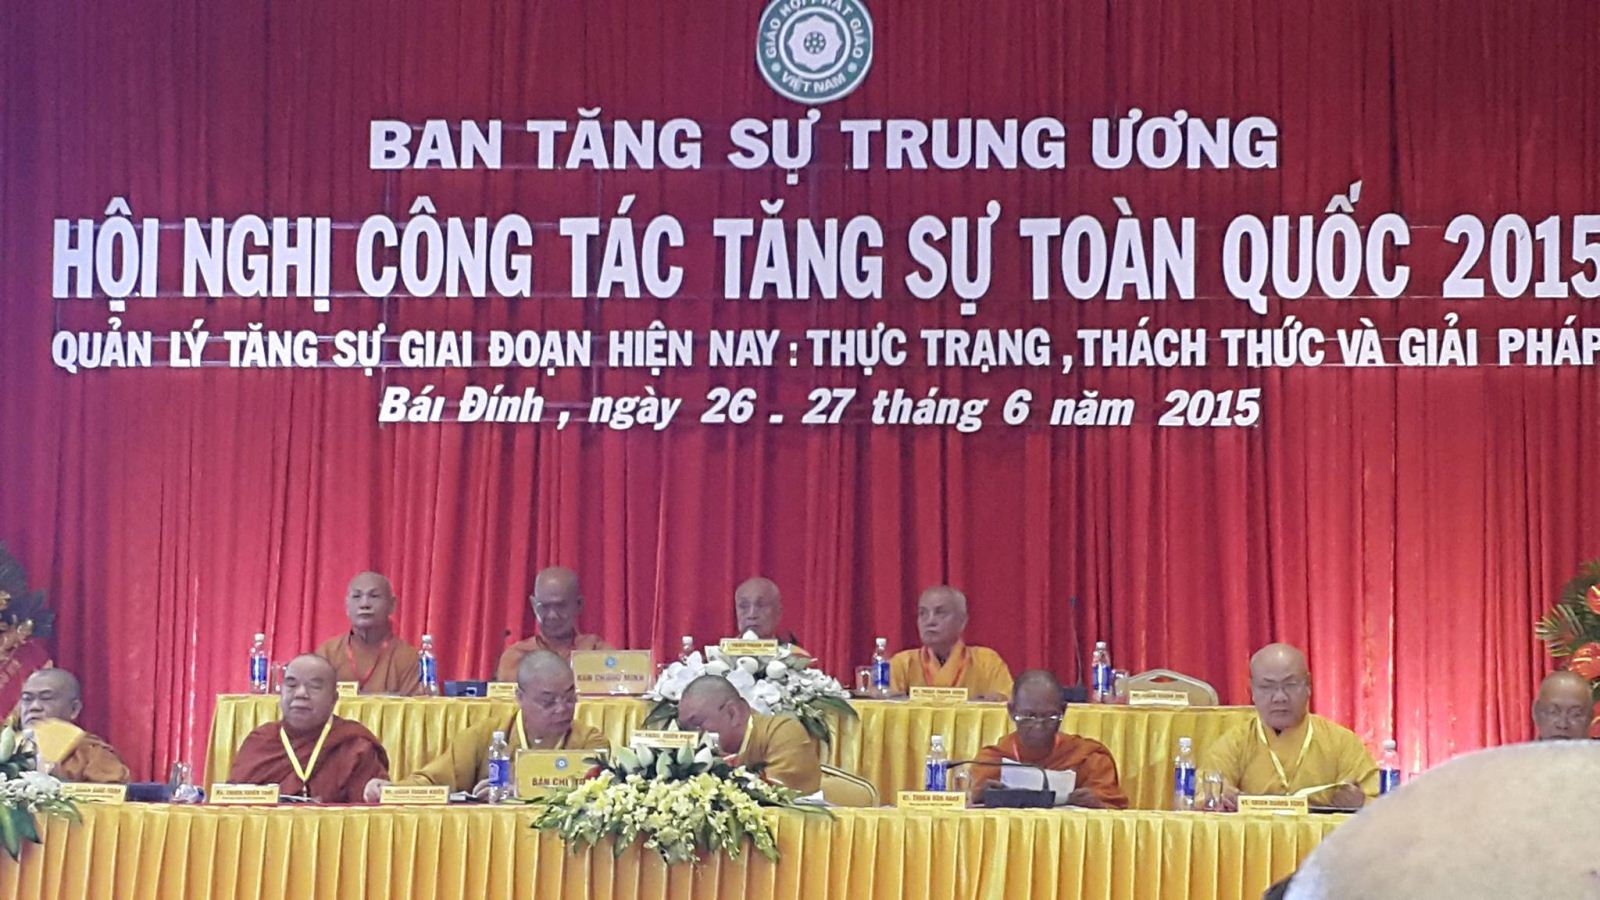 HỘI NGHỊ CÔNG TÁC TĂNG SỰ TOÀN QUỐC 2015 tại chùa Bái Đính Tỉnh Ninh Binh.